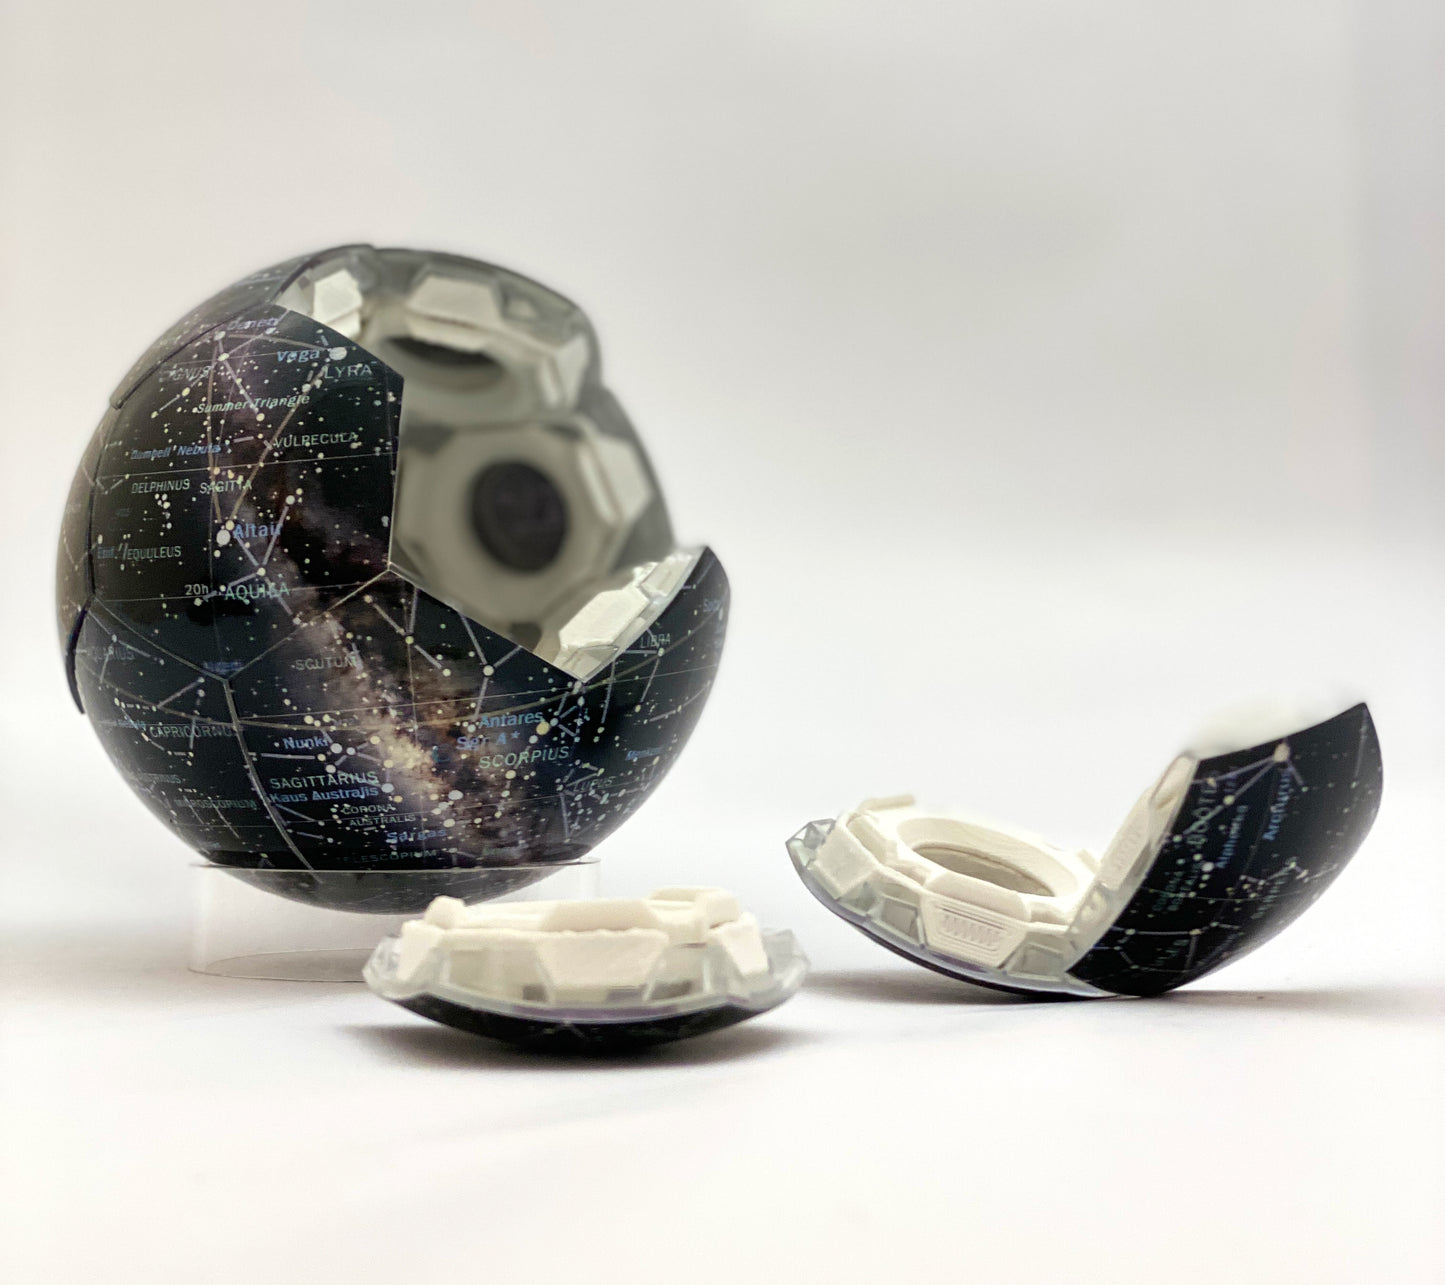 Celestial Globe - 4 inch